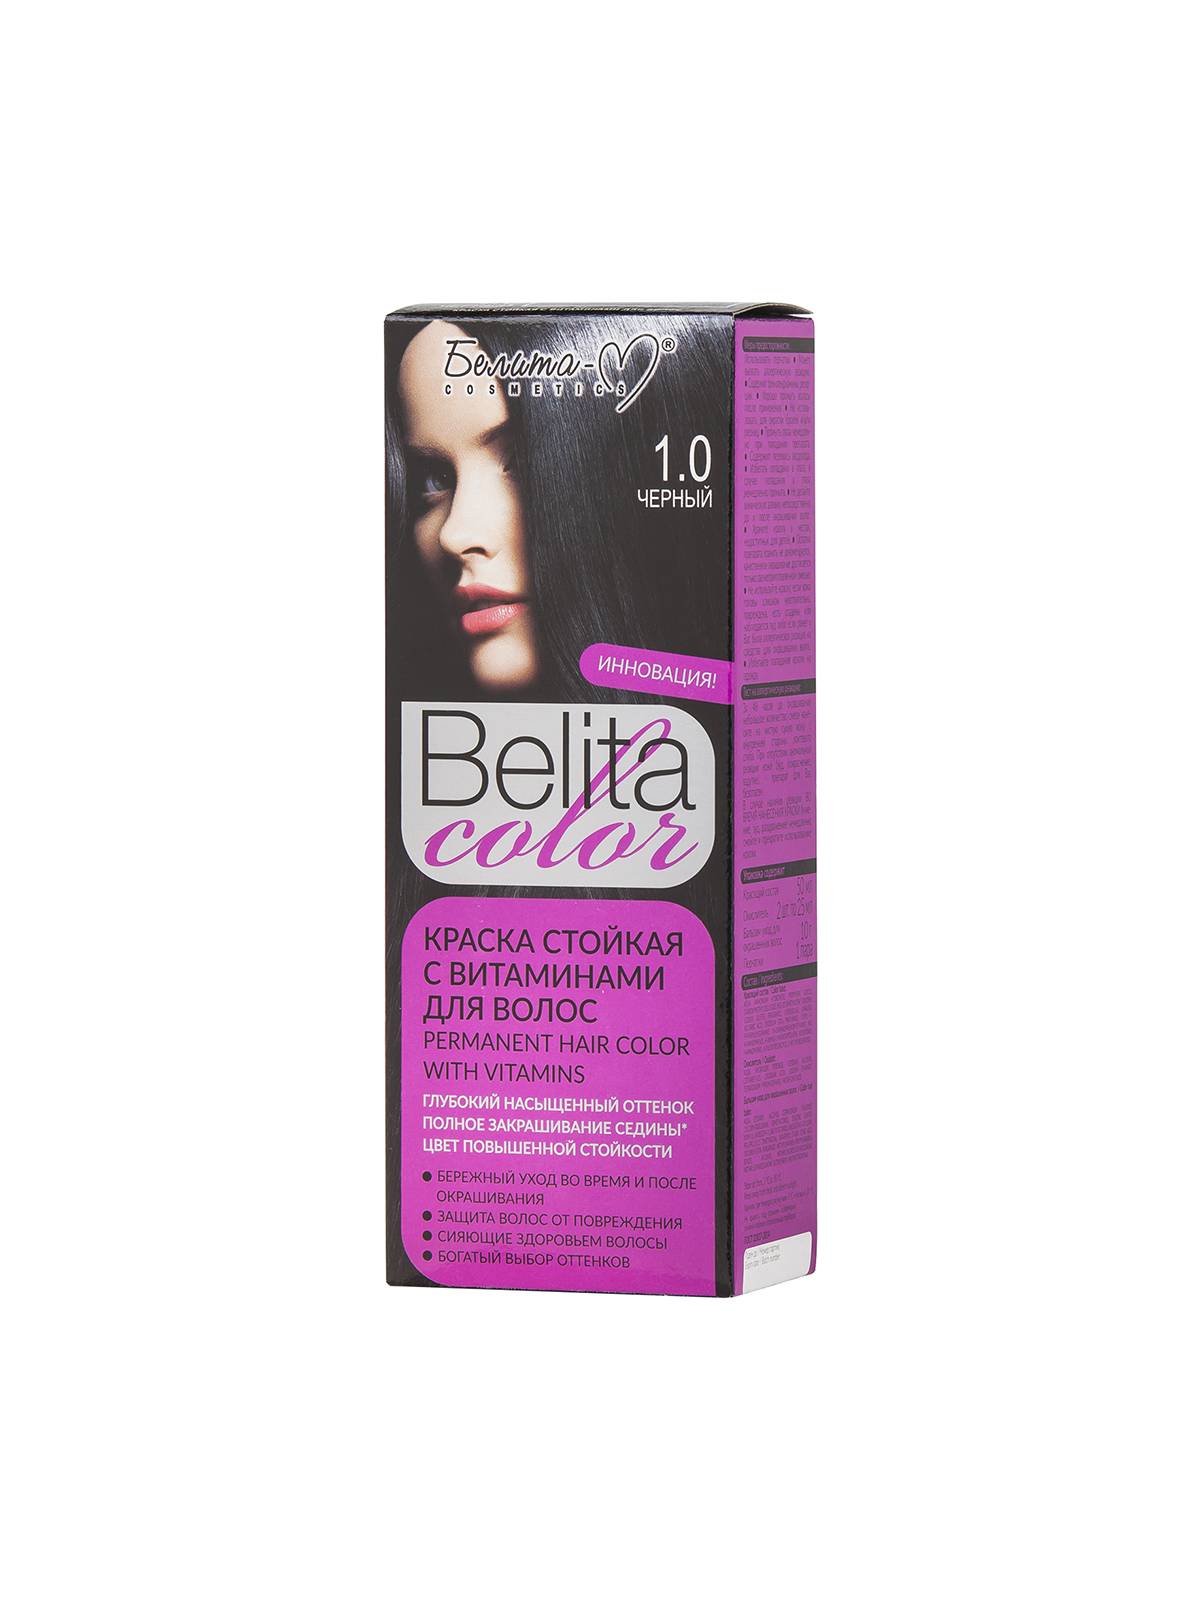 Краска стойкая с витаминами для волос серии "Belita сolor" тон №1.0 Черный (к-т)